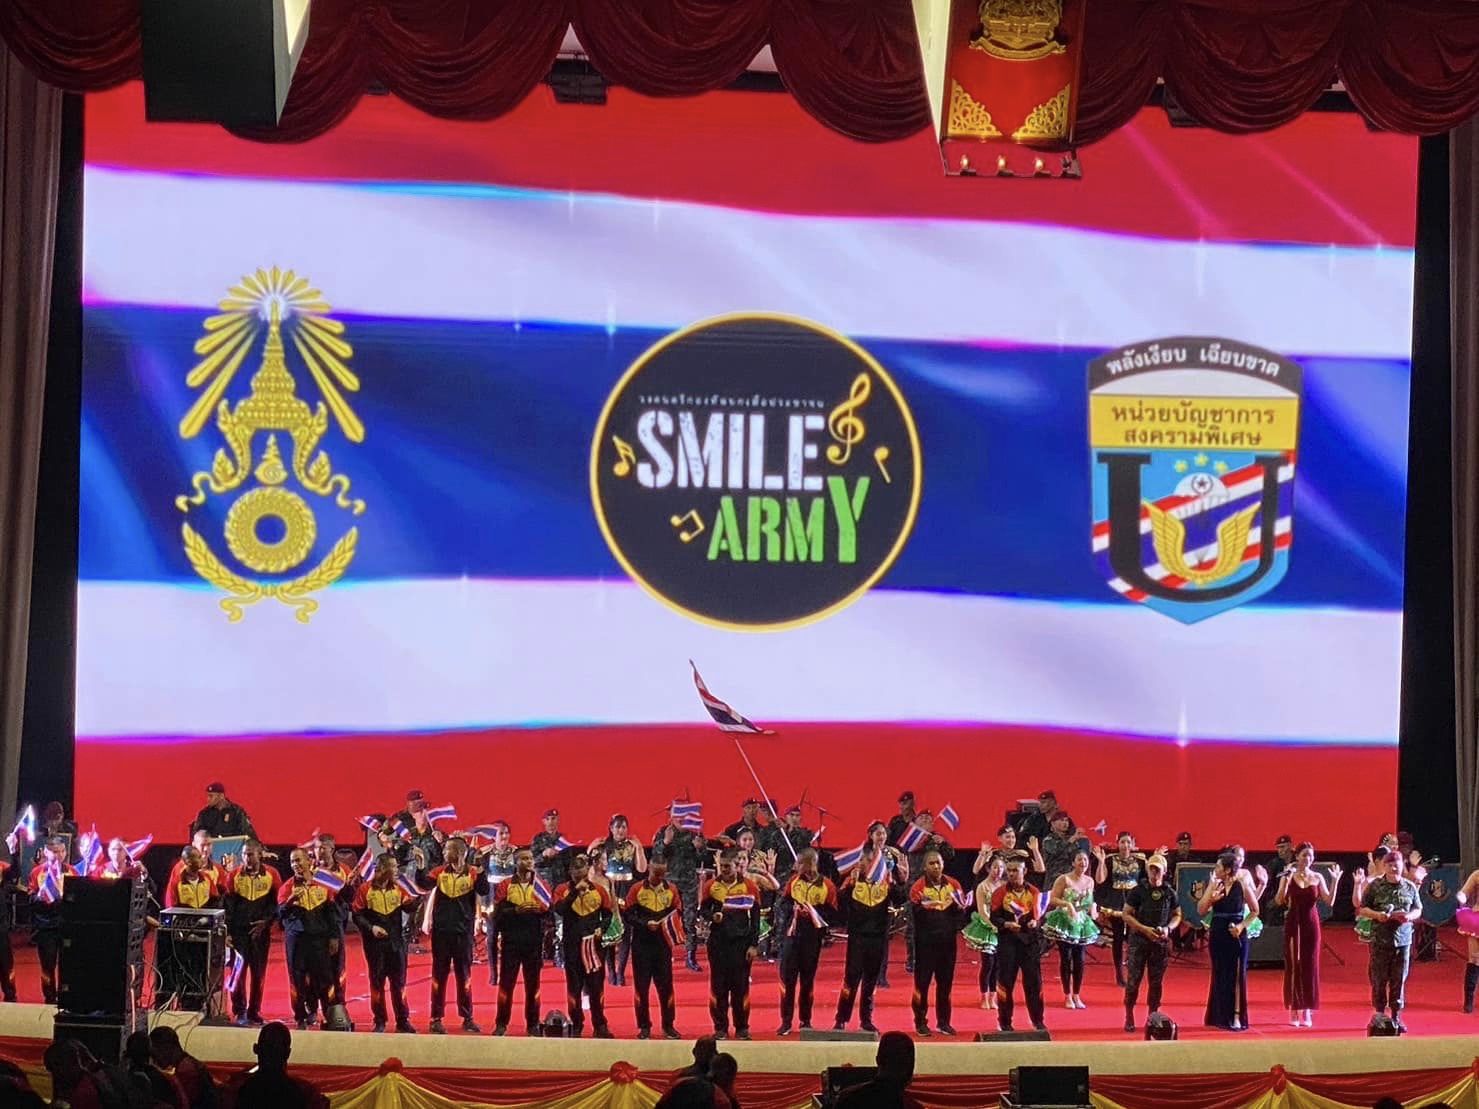 วงดนตรี Smile Army สร้างความประทับใจ